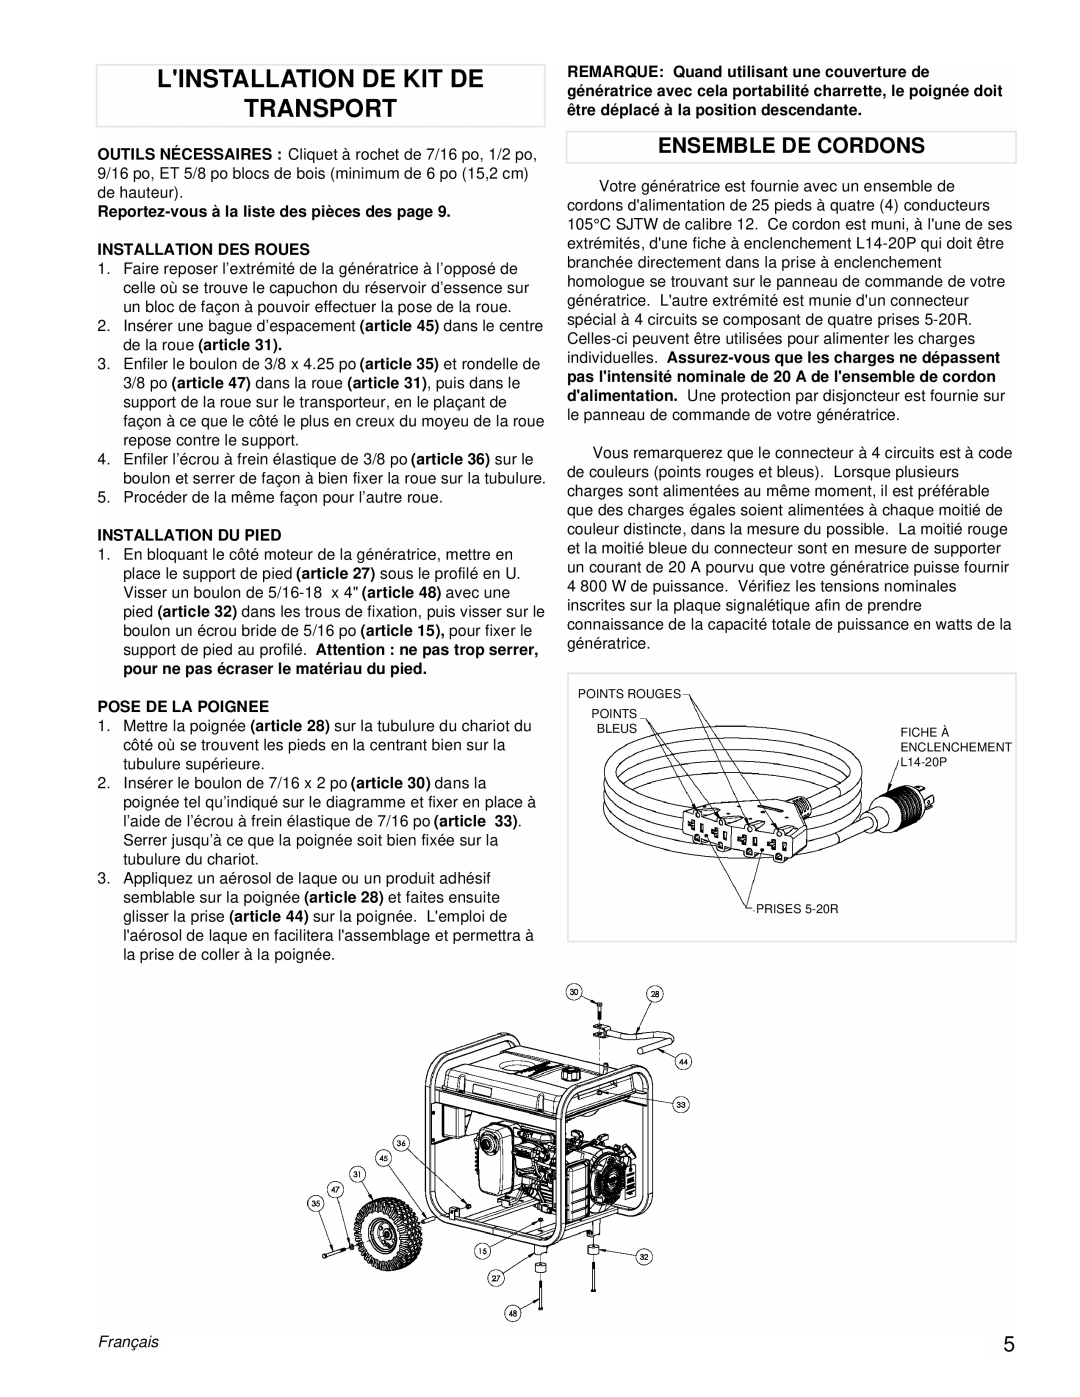 Powermate PM0435252 manual Linstallation De Kit De Transport, Ensemble De Cordons, Français 